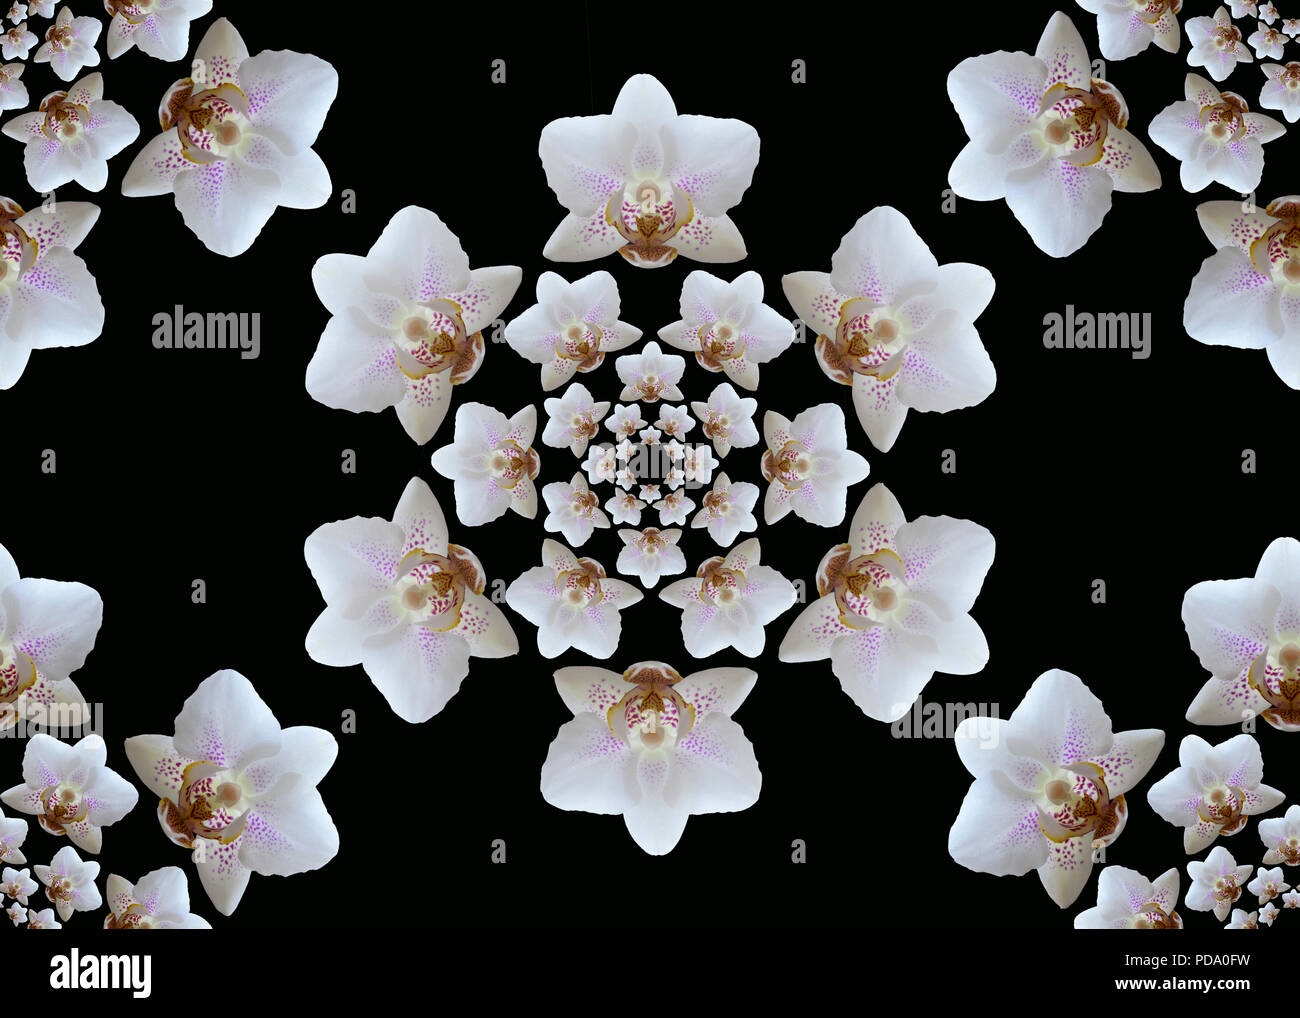 Nahtlose Orchidee blüht. Schöne geometrische sechseckige Zusammensetzung der konzentrischen weiße Orchideen auf schwarzem Hintergrund. Stockfoto